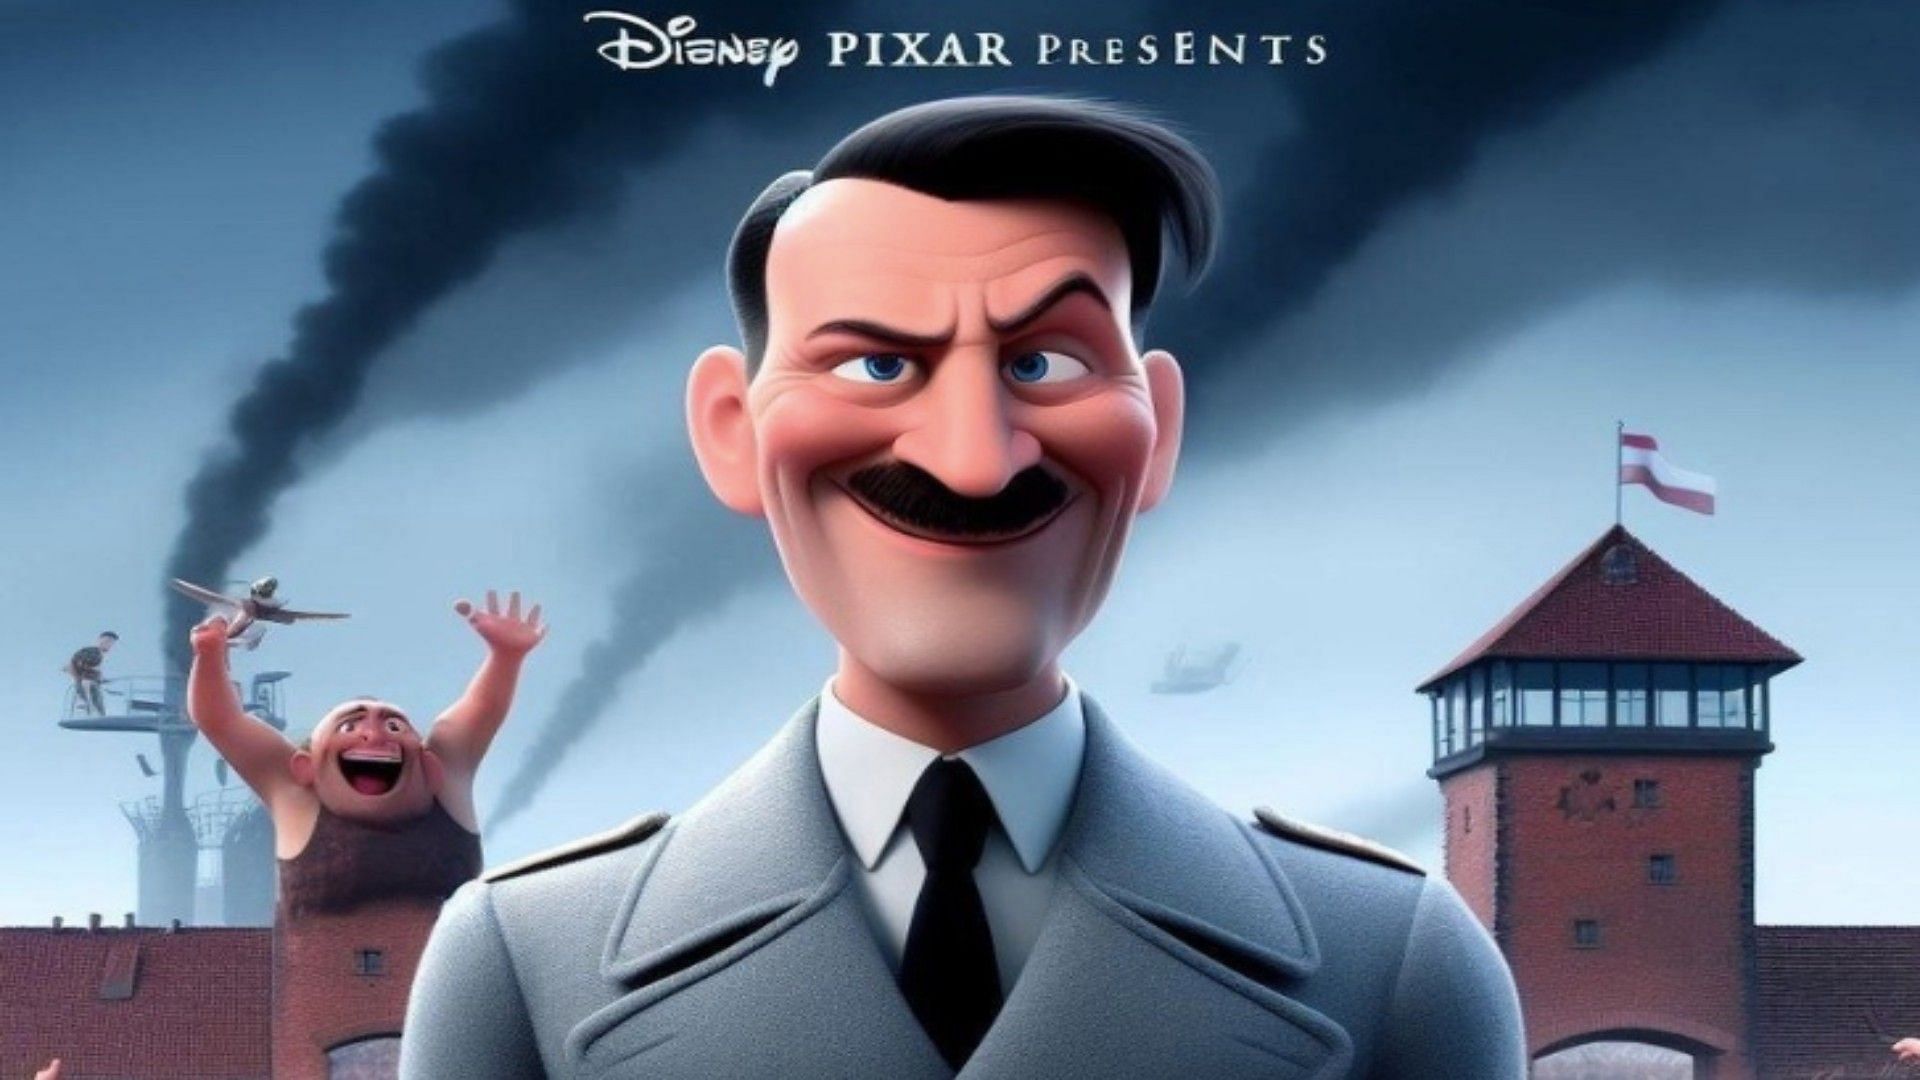 Disney Holocaust Fake movie poster (Image via God